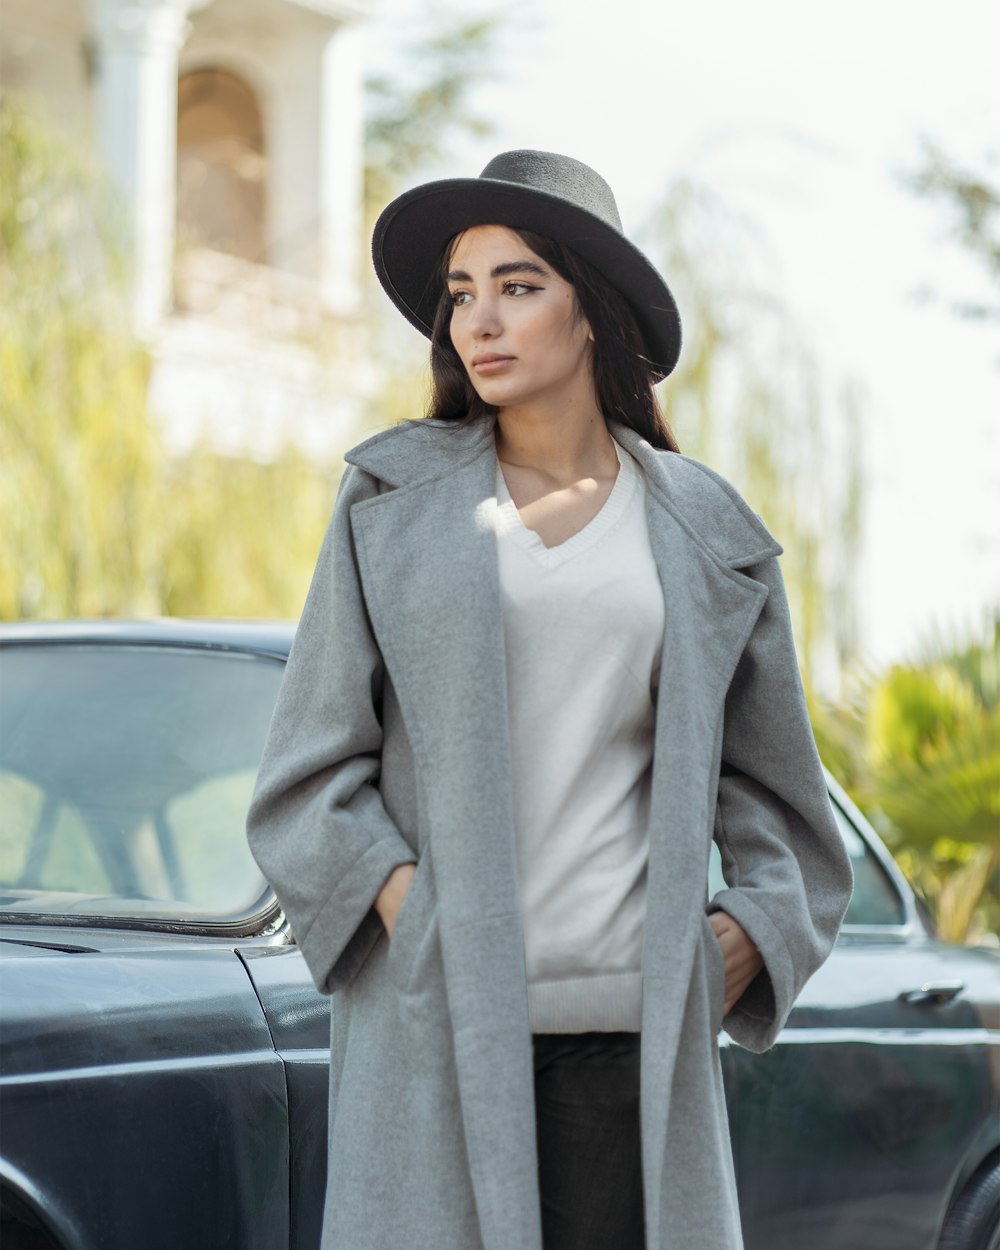 une personne vêtue d’un manteau gris et d’un chapeau debout à côté d’une voiture